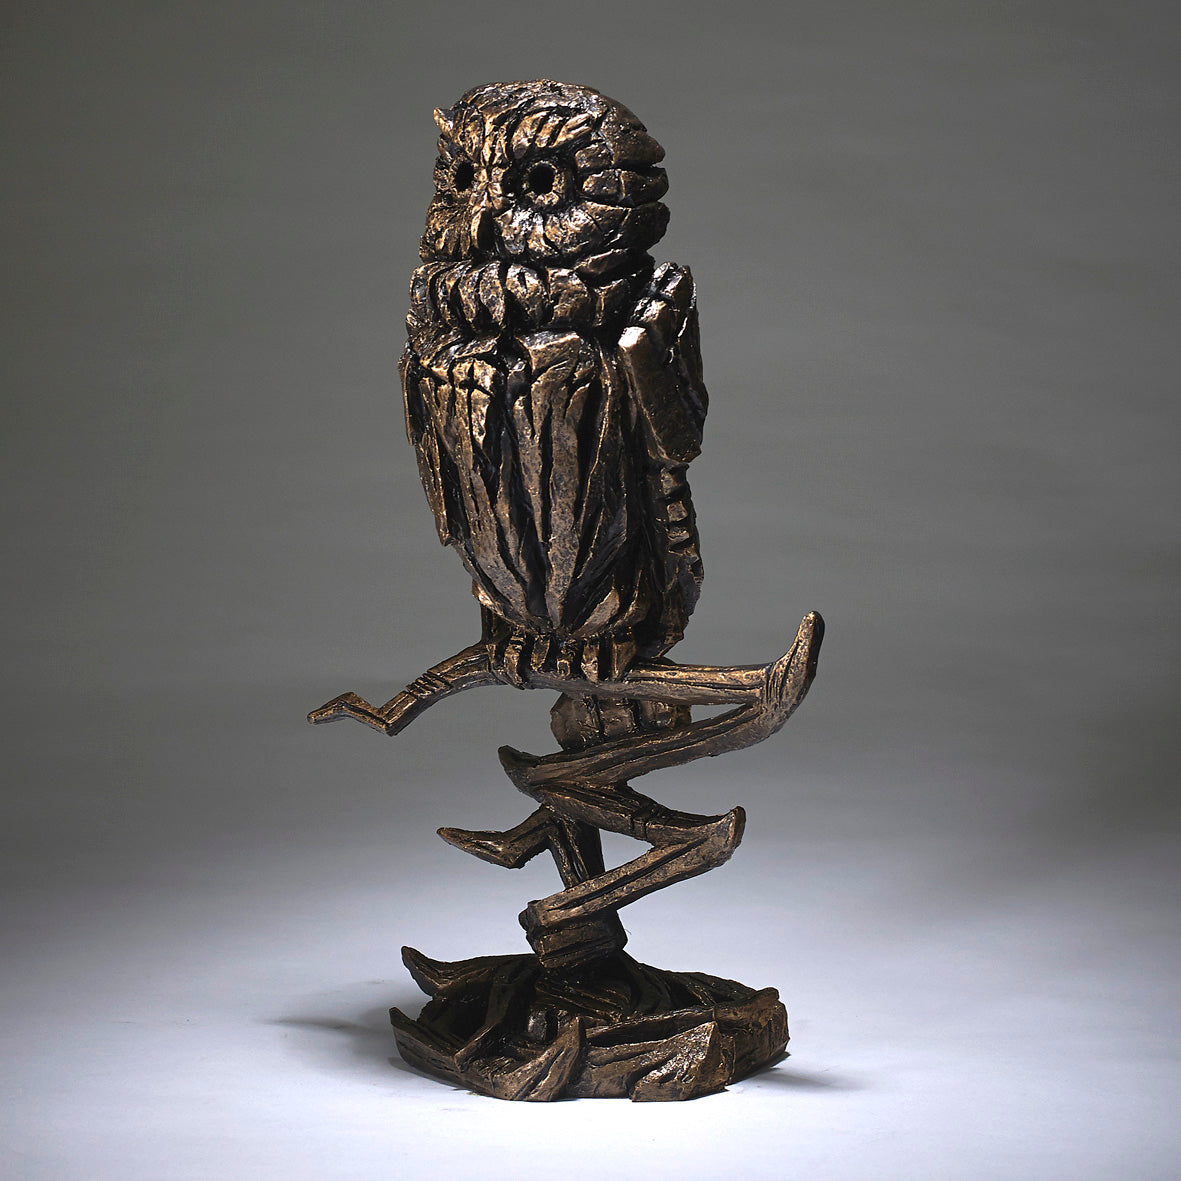 Edge Sculpture Owl Golden By Matt Buckley